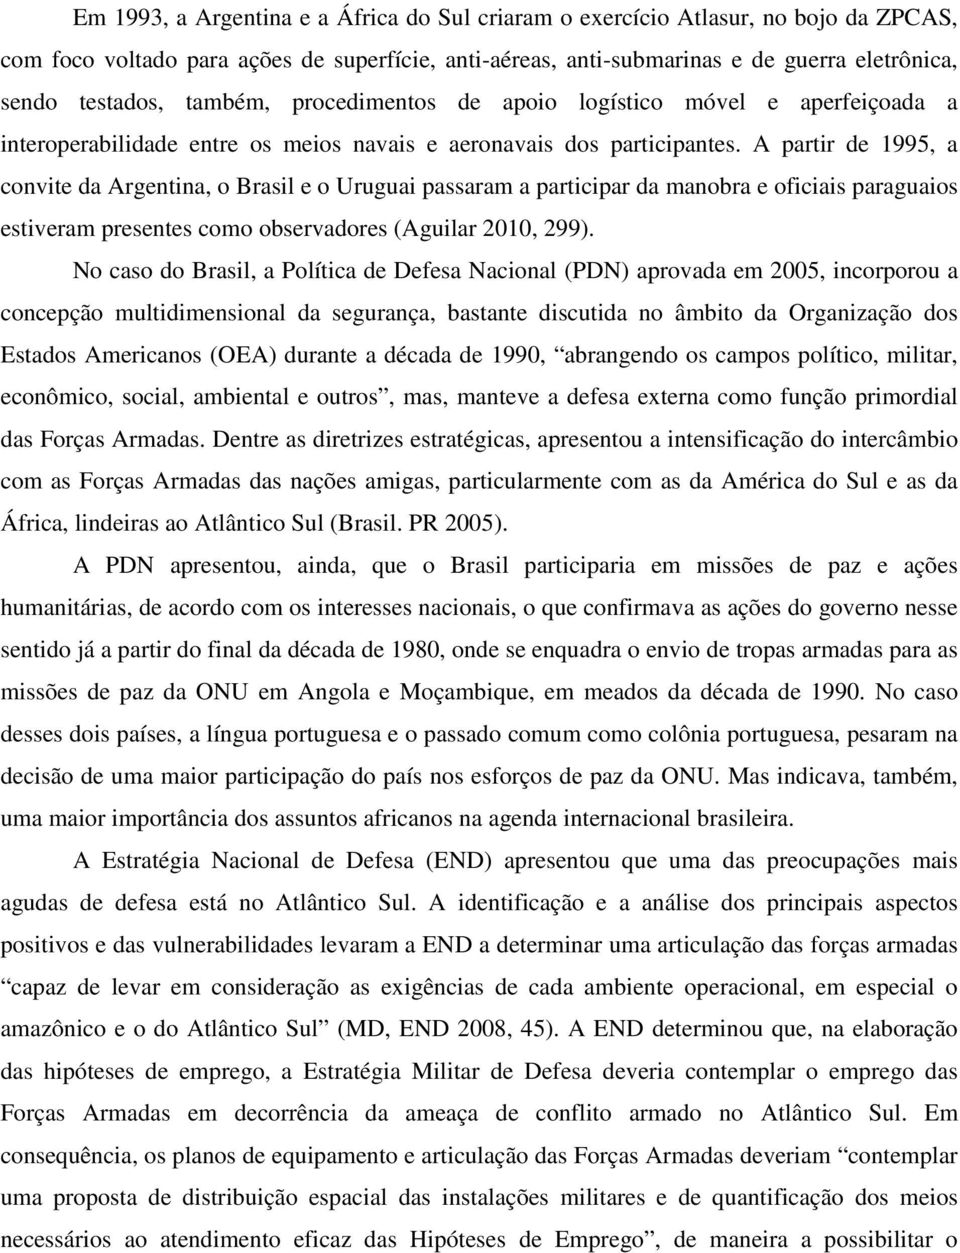 A partir de 1995, a convite da Argentina, o Brasil e o Uruguai passaram a participar da manobra e oficiais paraguaios estiveram presentes como observadores (Aguilar 2010, 299).